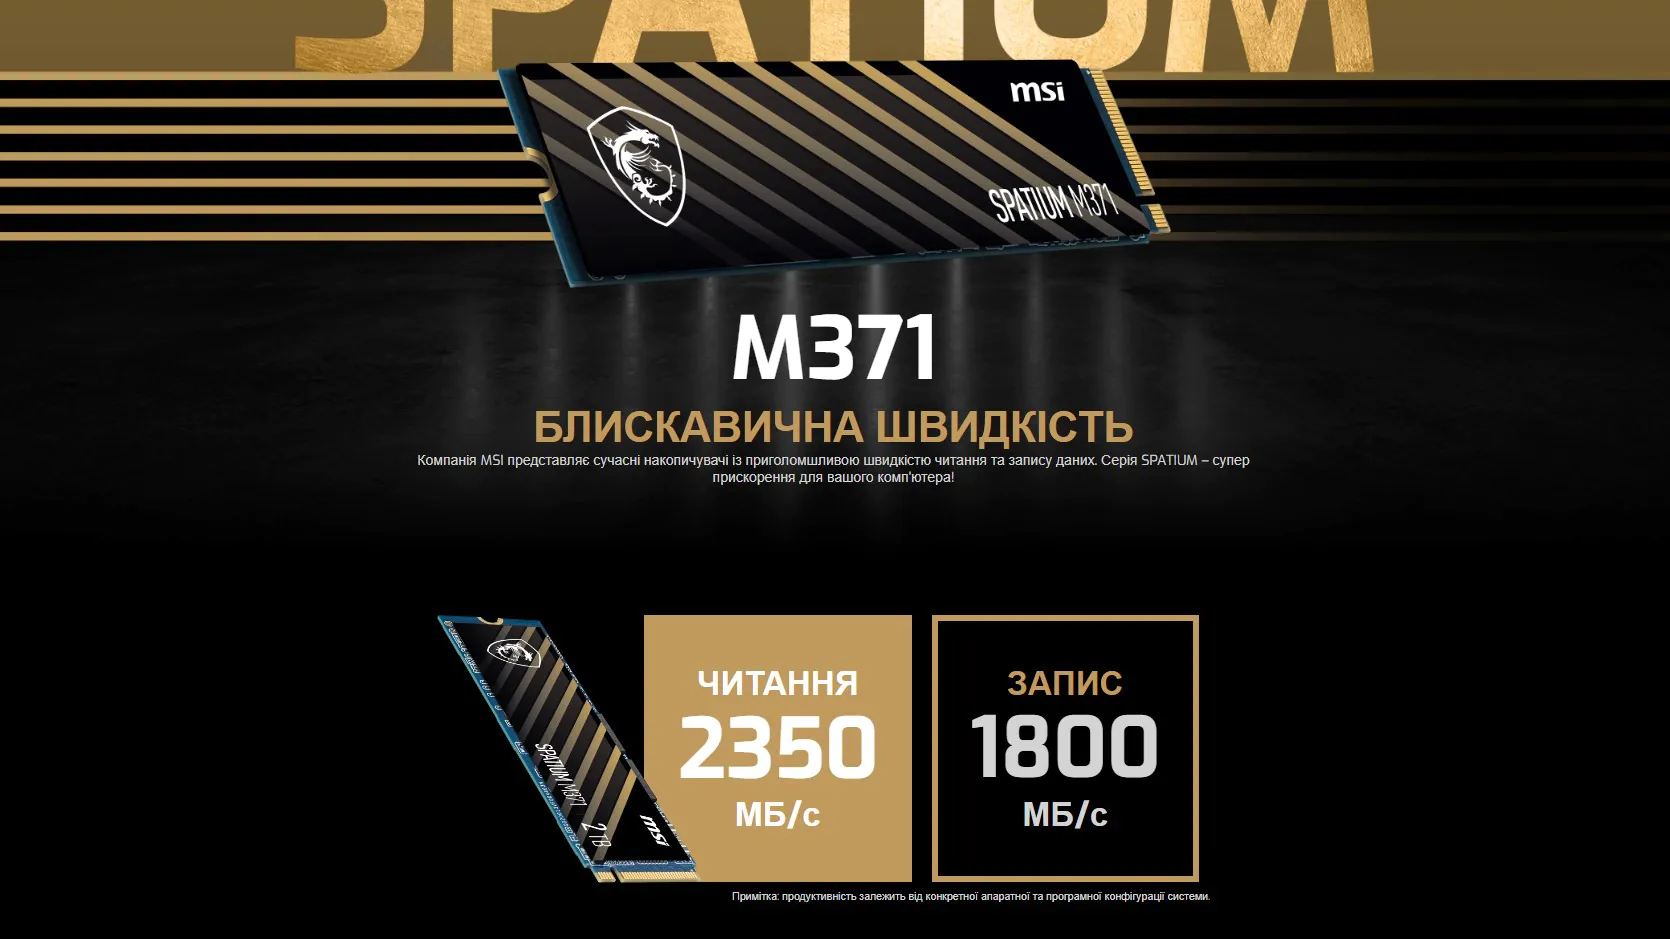 Disque SSD MSI Spatium S270 240Go - S-ATA 2,5